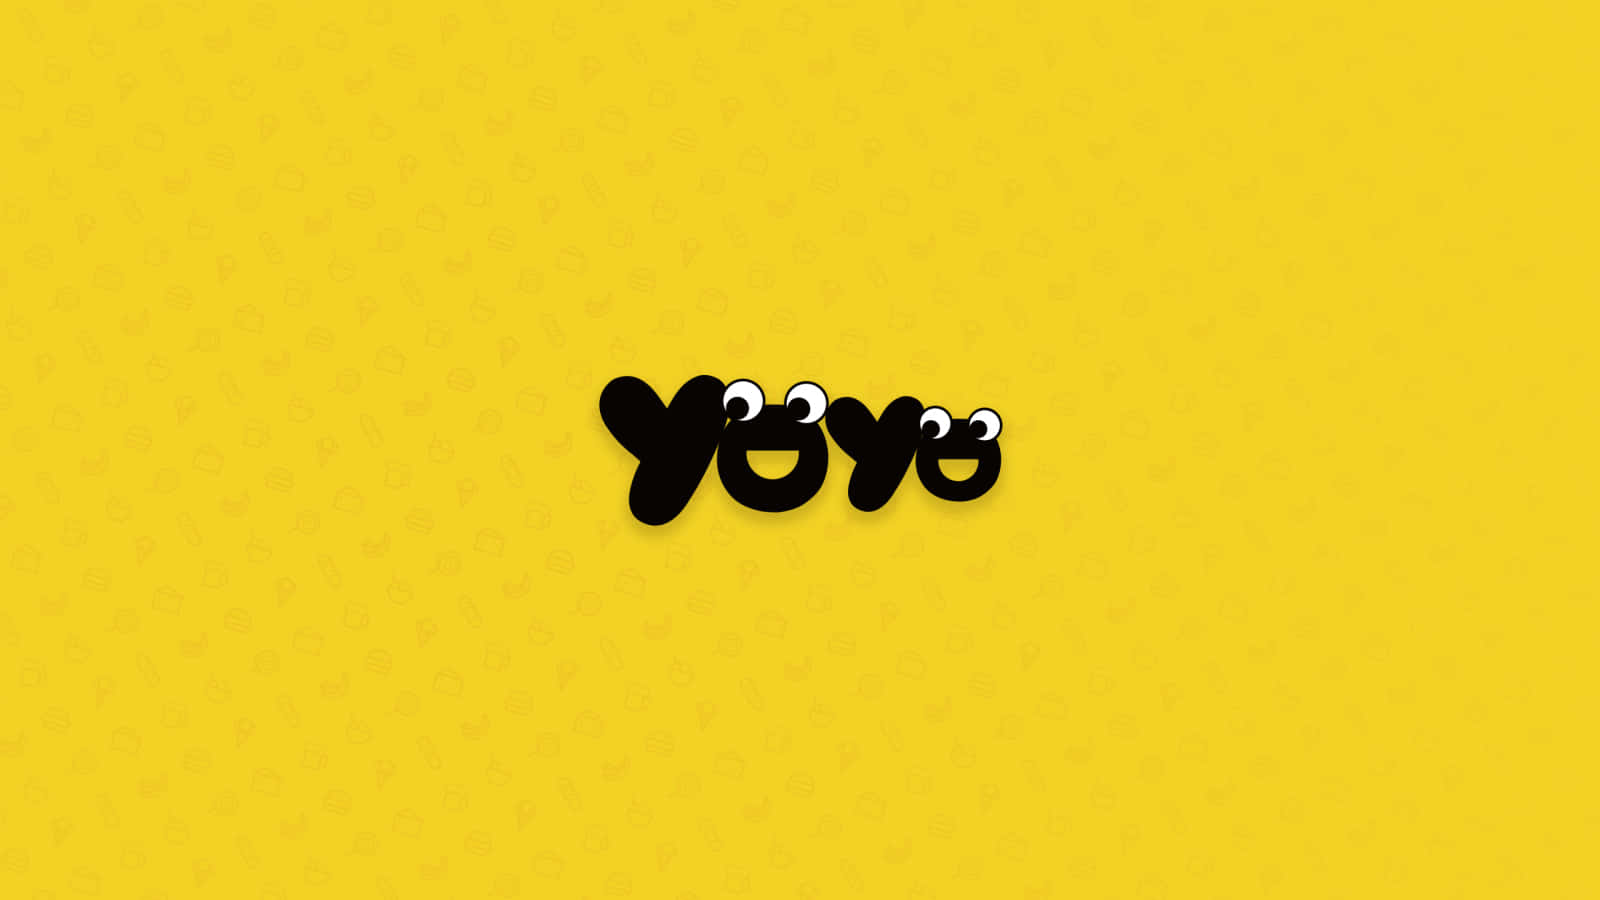 Umfundo Amarelo Com A Palavra Yoyo Nele. Papel de Parede